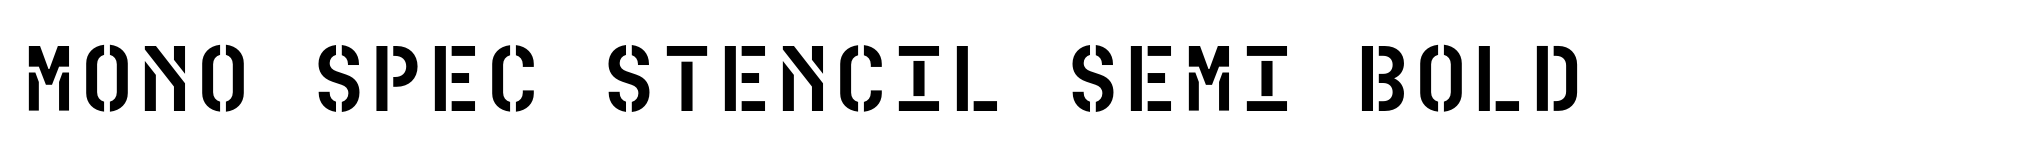 Mono Spec Stencil Semi Bold image